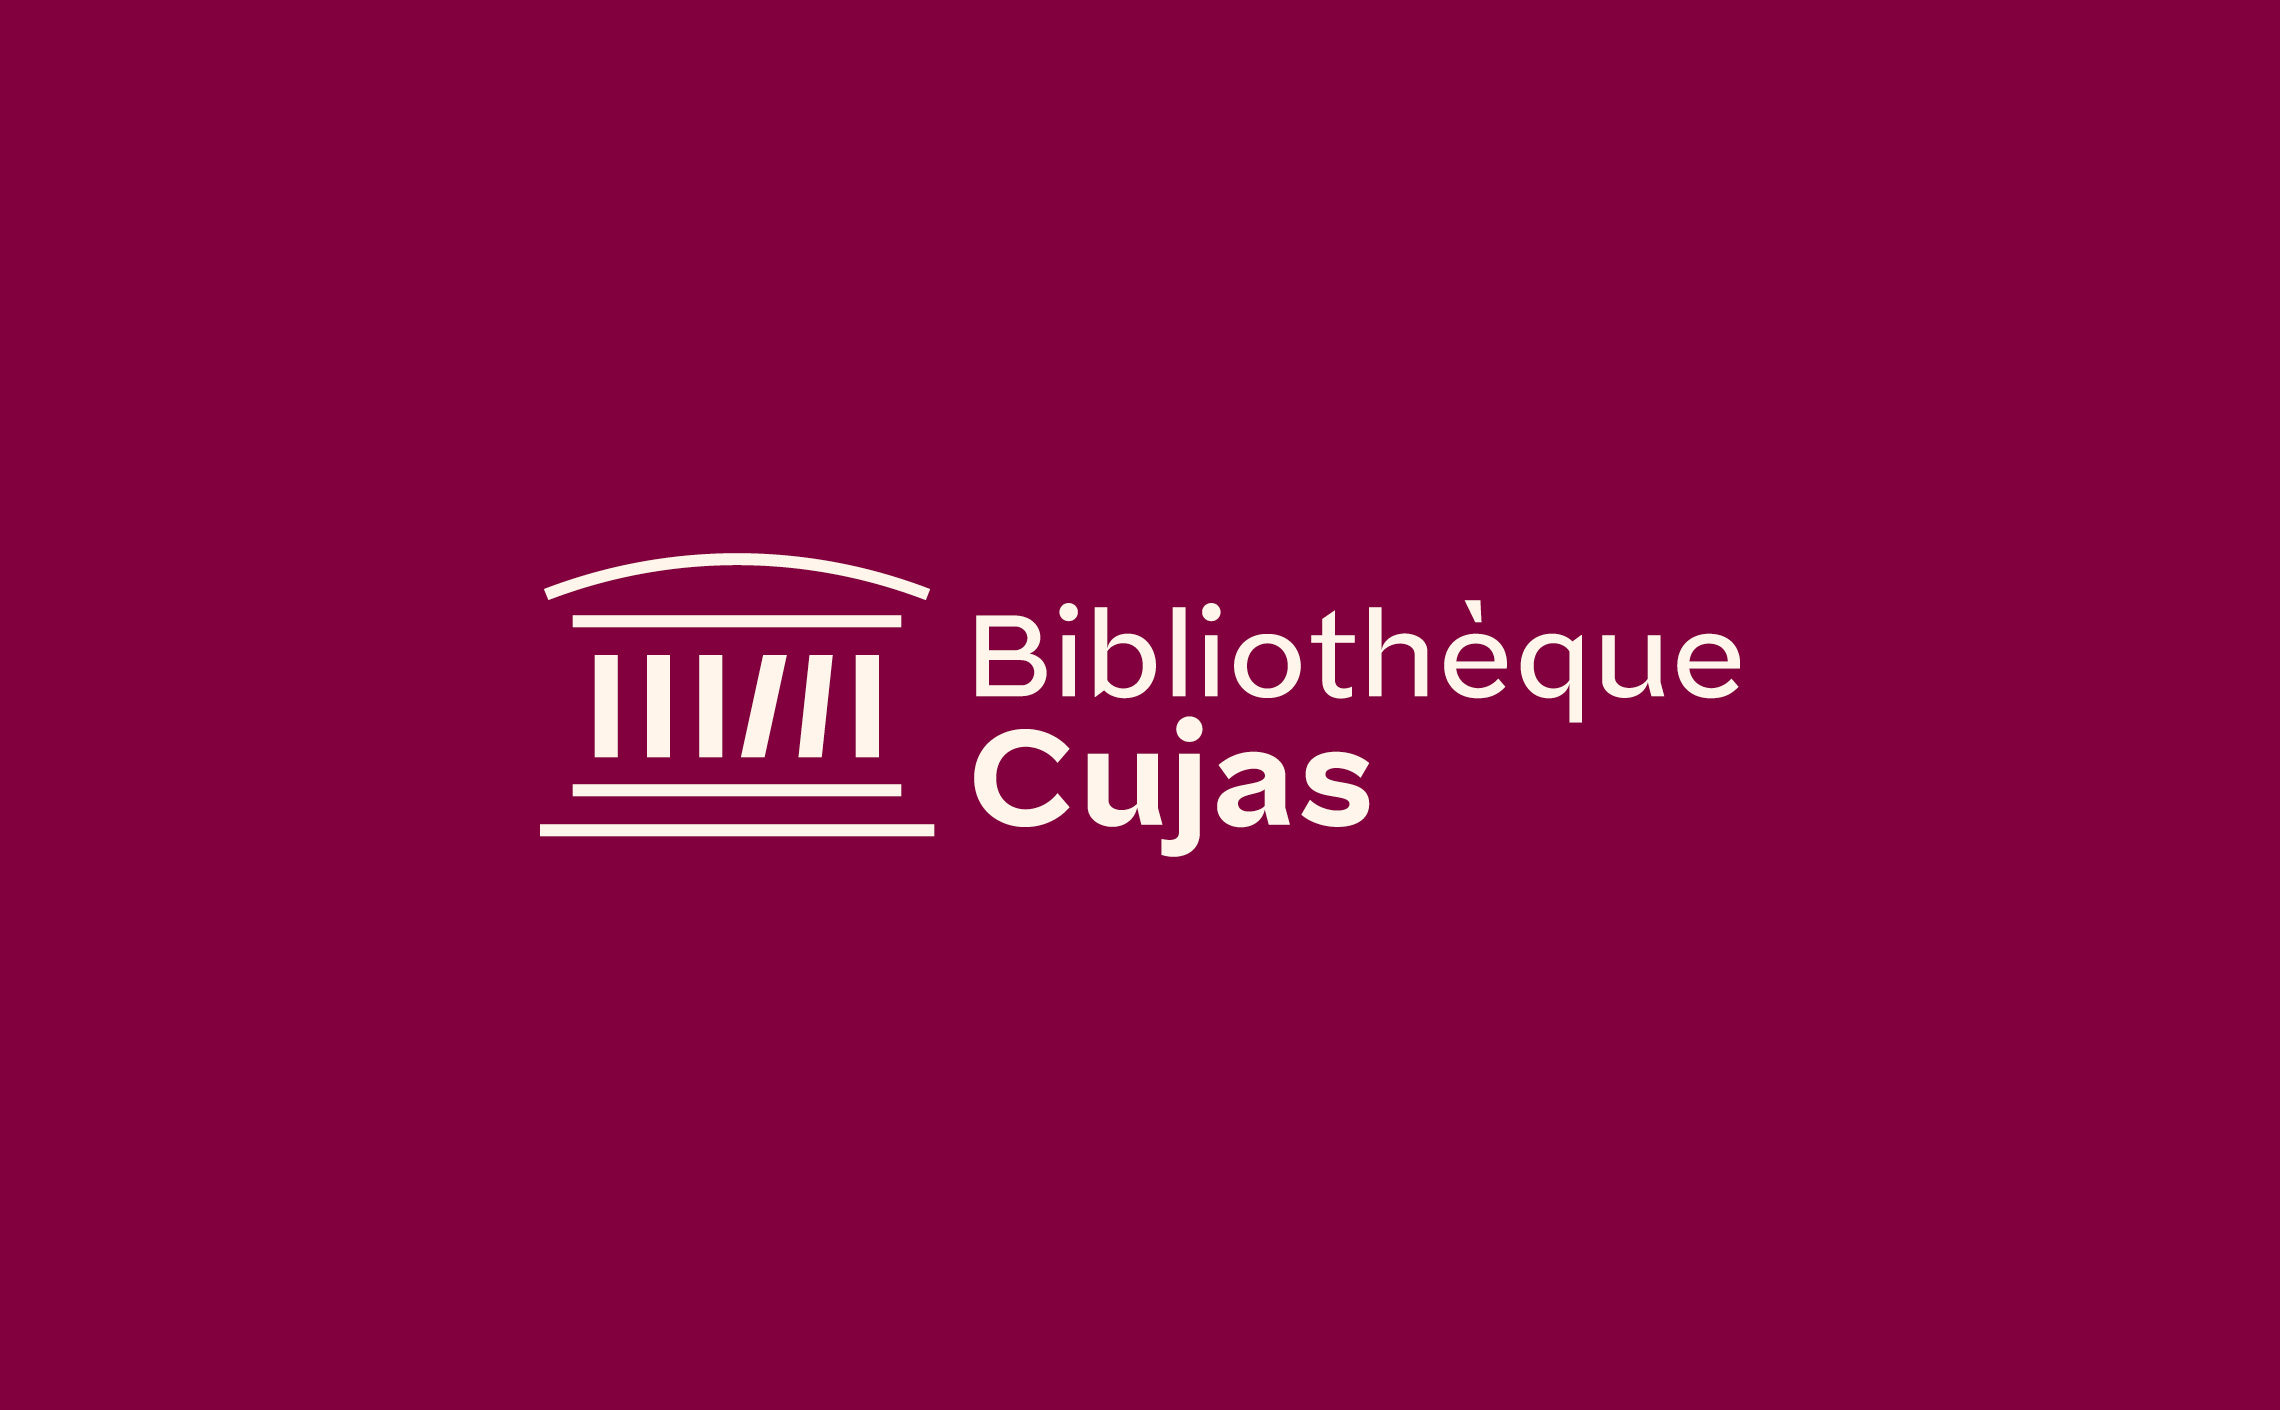 Bibliothèque droit juridique Cujas paris identité visuelle